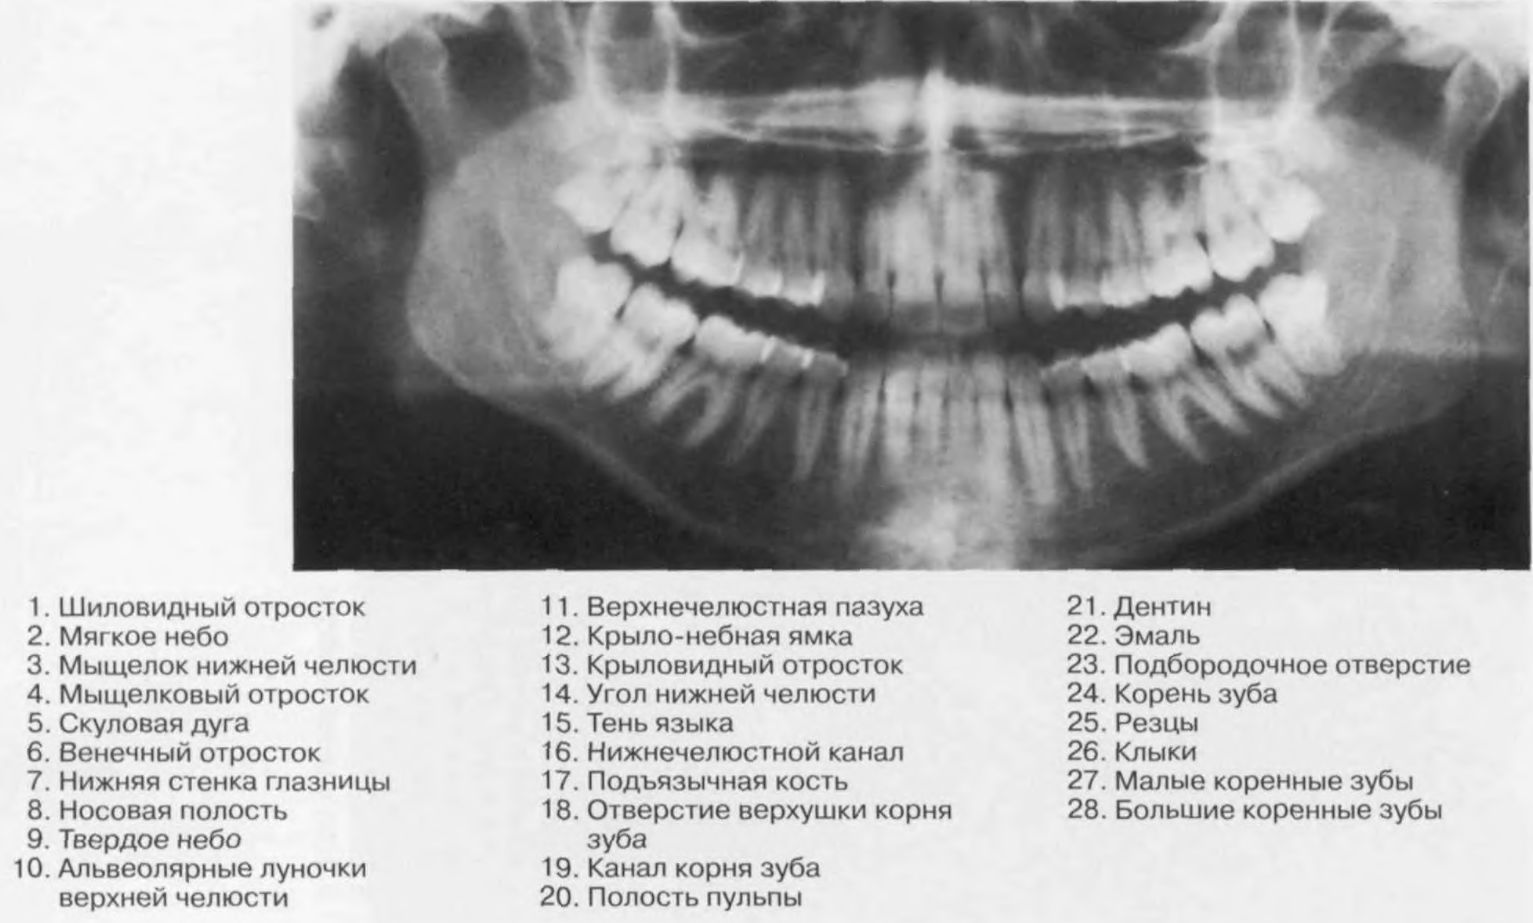 Мыщелок челюсти. Мыщелкового отростка нижней челюсти. Мыщелковый отросток нижней челюсти рентген. Шиловидный отросток нижней челюсти. Венечный отросток нижней челюсти рентген.